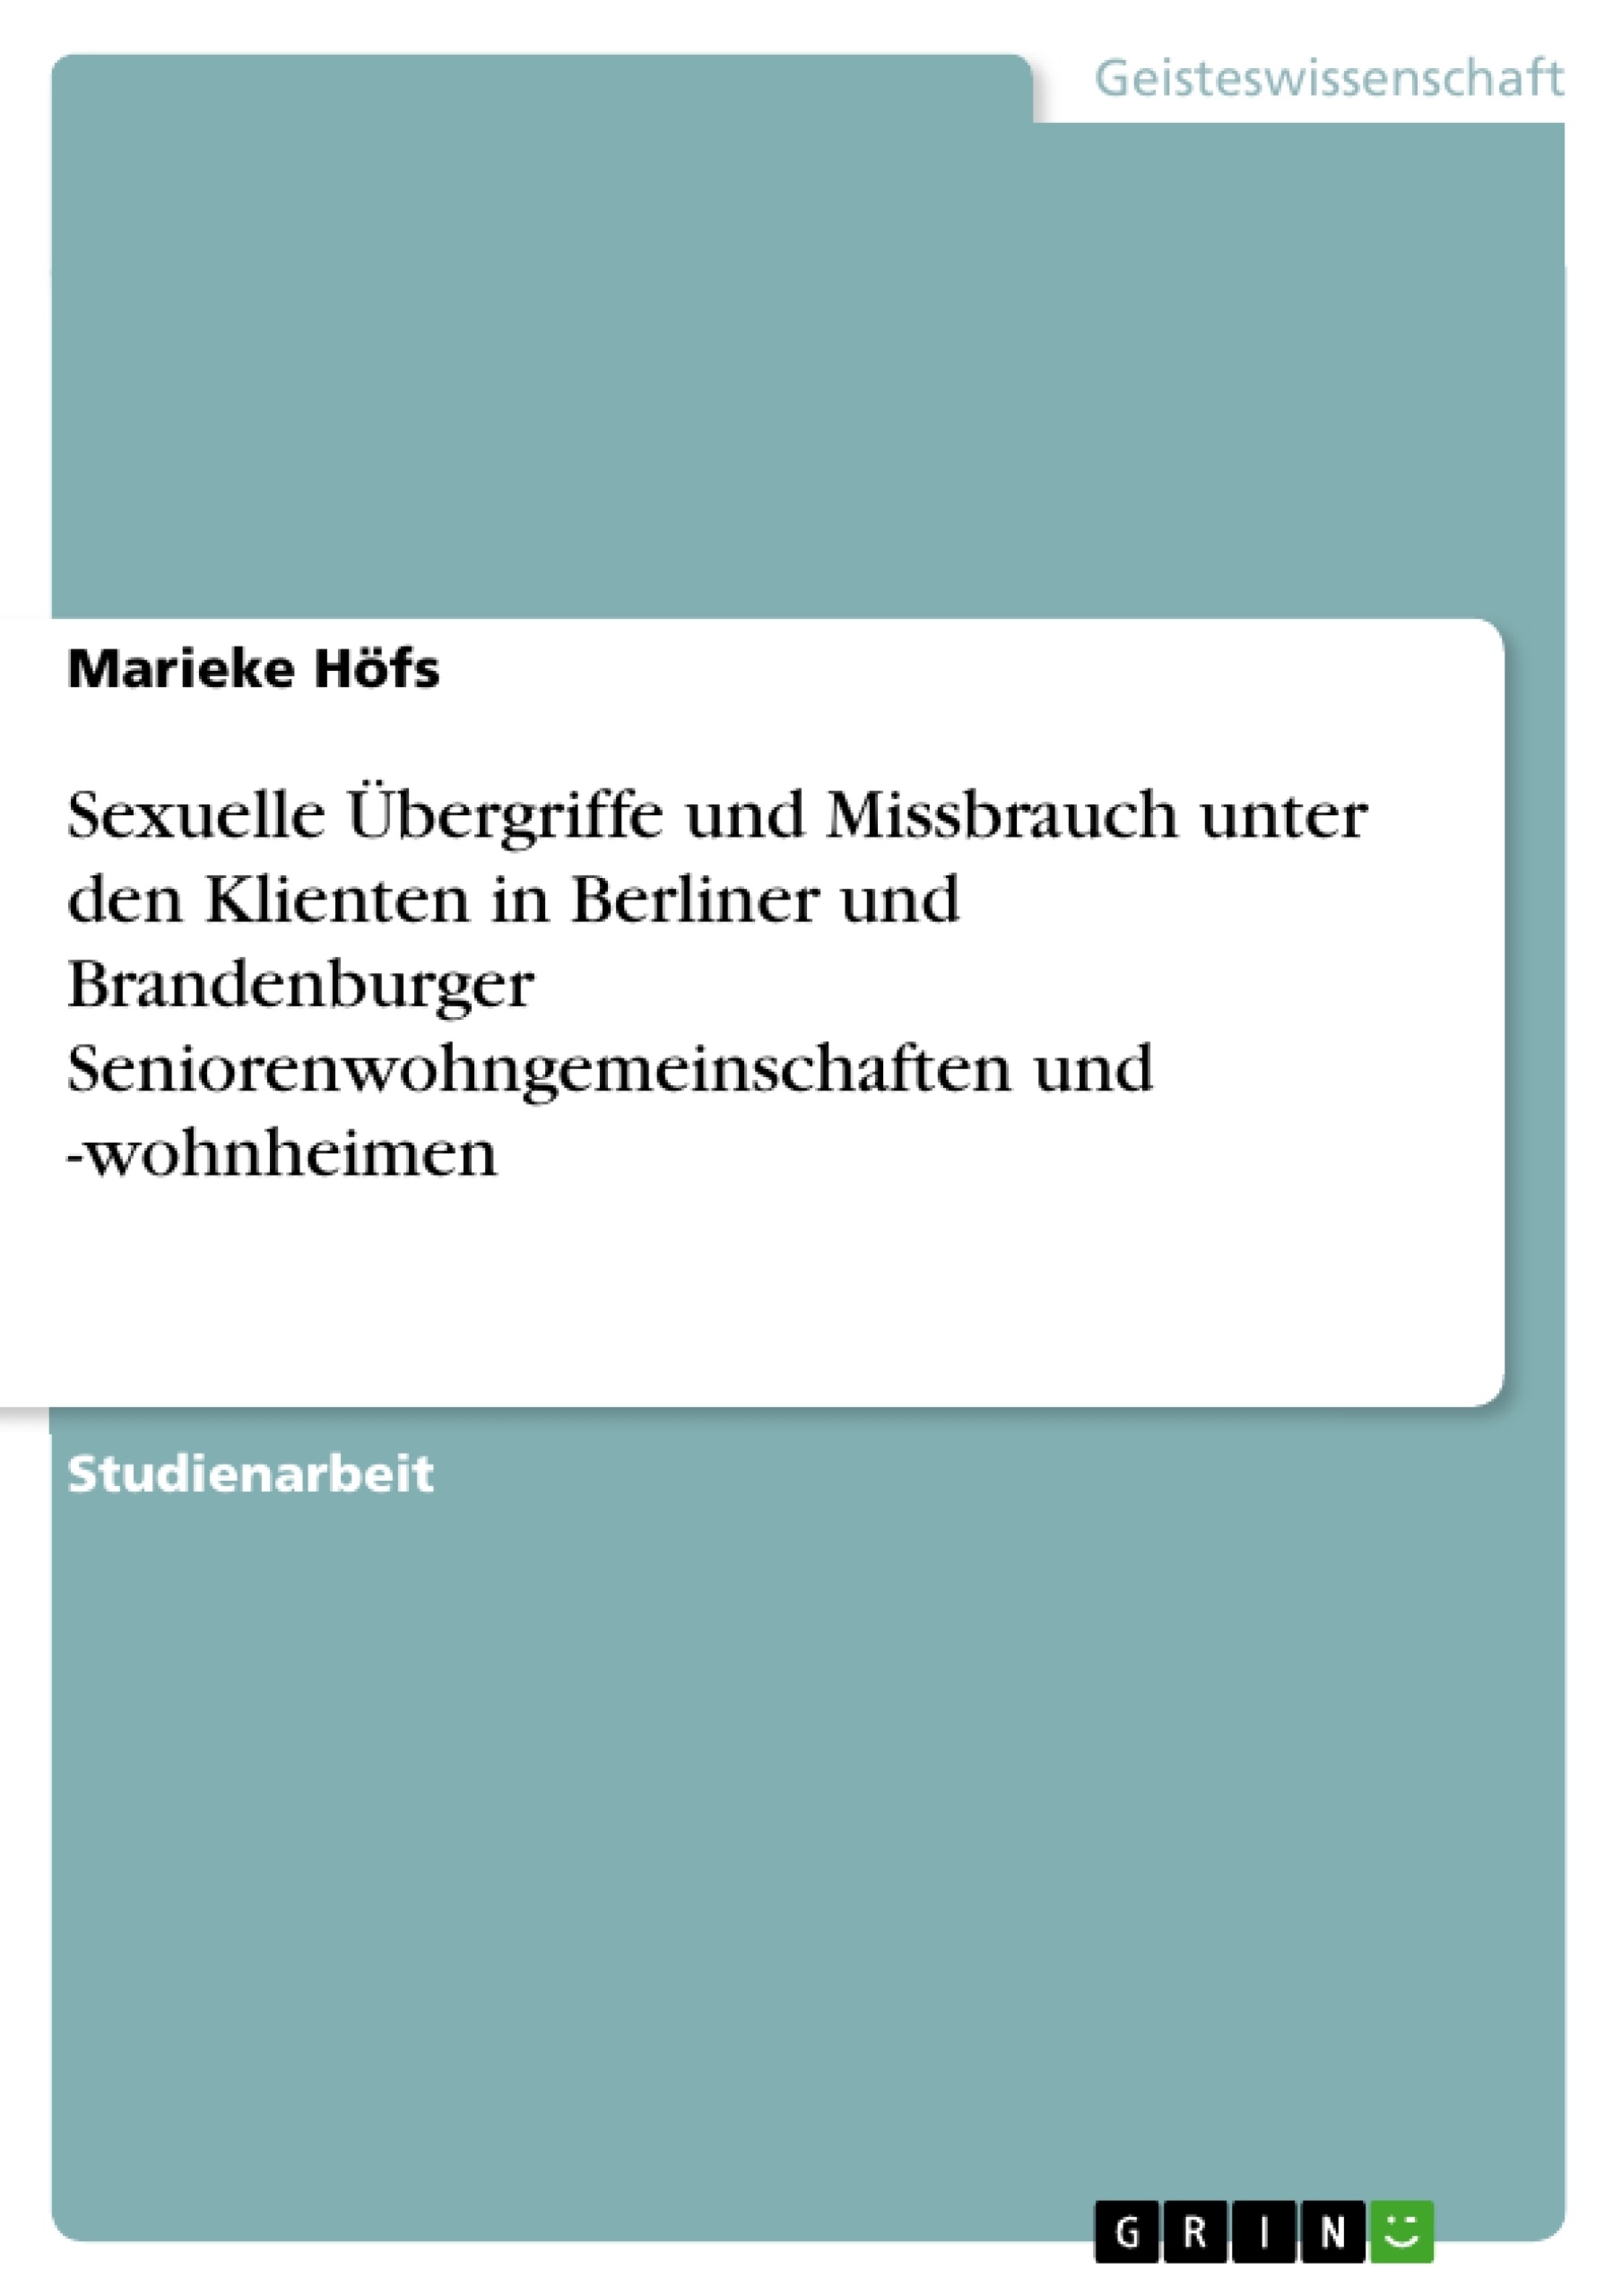 Titel: Sexuelle Übergriffe und Missbrauch unter den Klienten in Berliner und Brandenburger Seniorenwohngemeinschaften und -wohnheimen